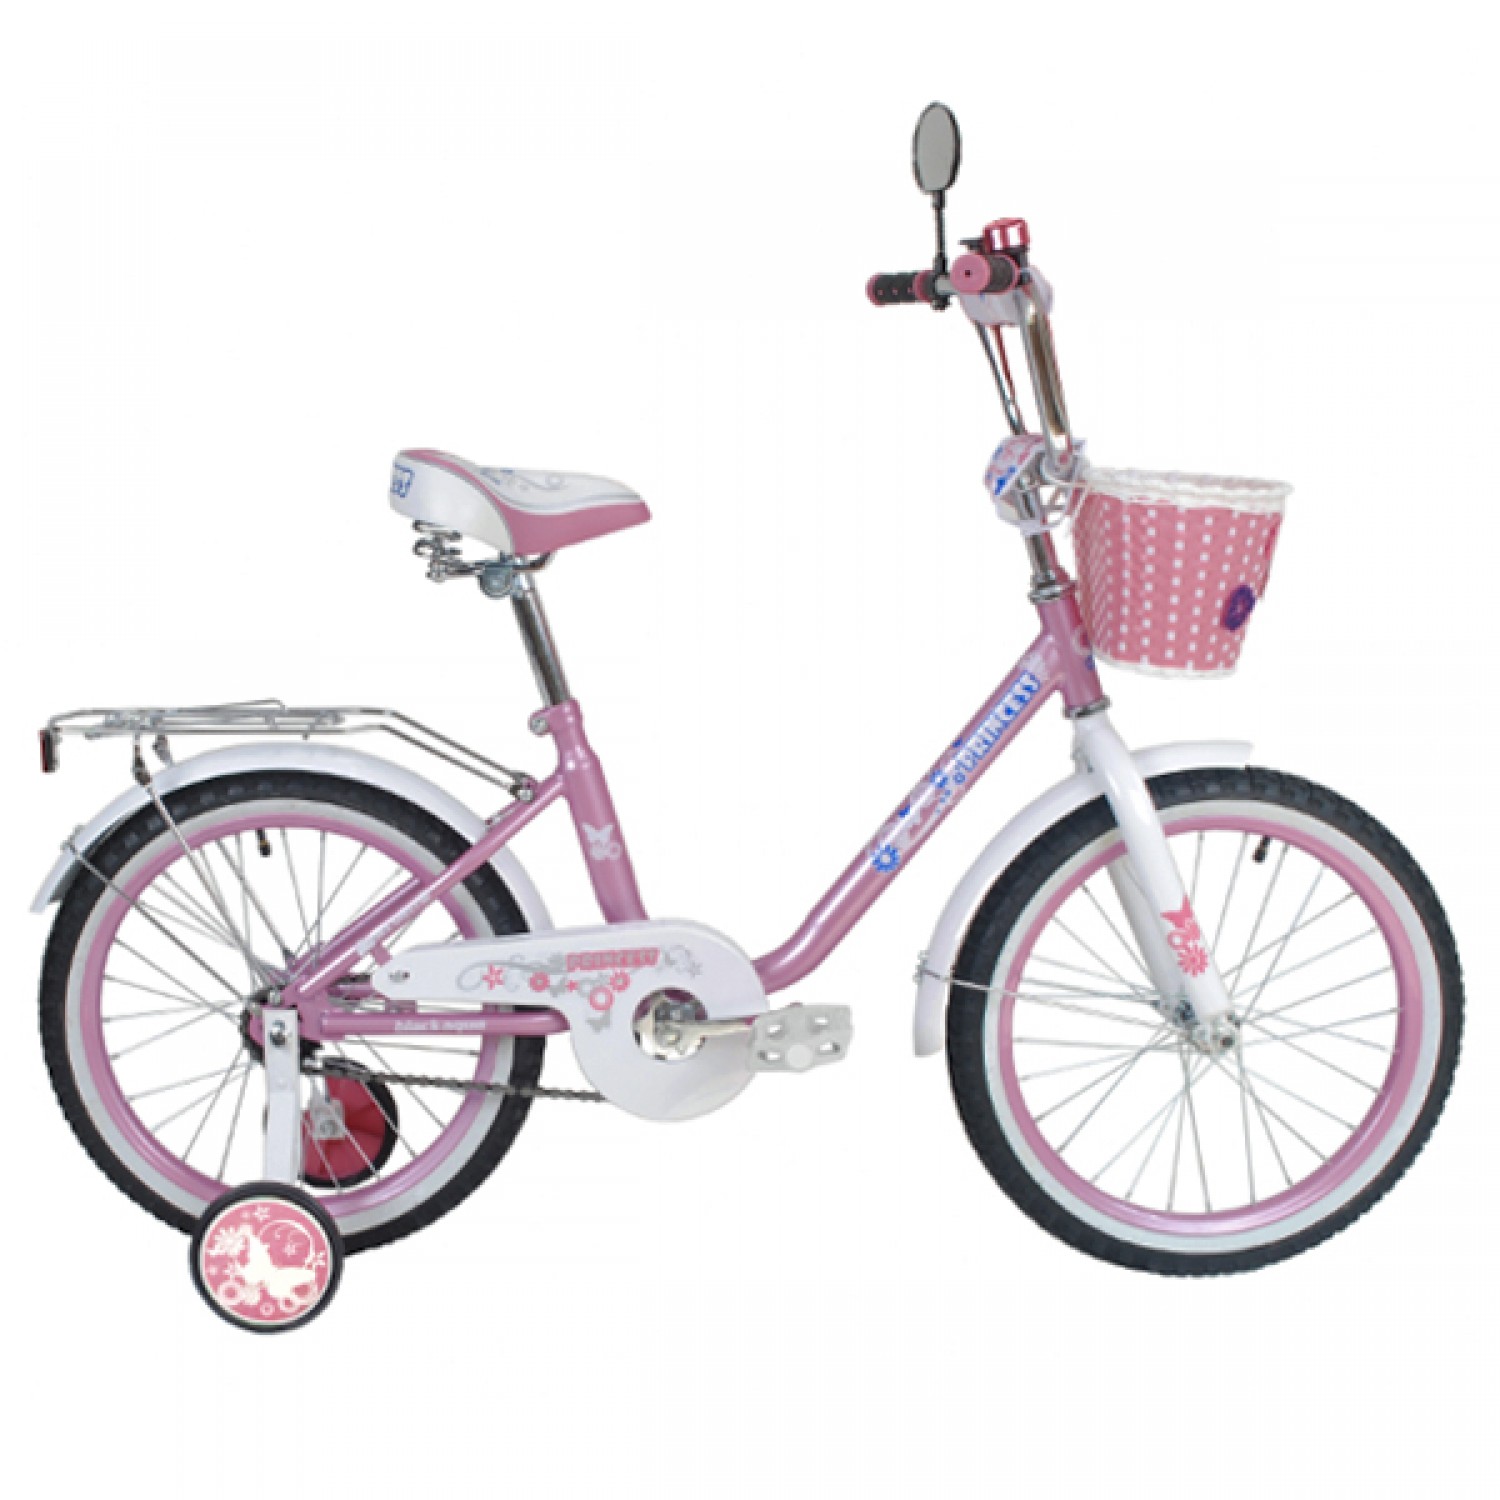 Розовый 20 2 цена. Детский велосипед Black Aqua Princess 16. Велосипед Black Aqua Princess 16"; 1s (розово-сиреневый). Merida Princess j16. Велосипед Black Aqua Princess 12 детский.